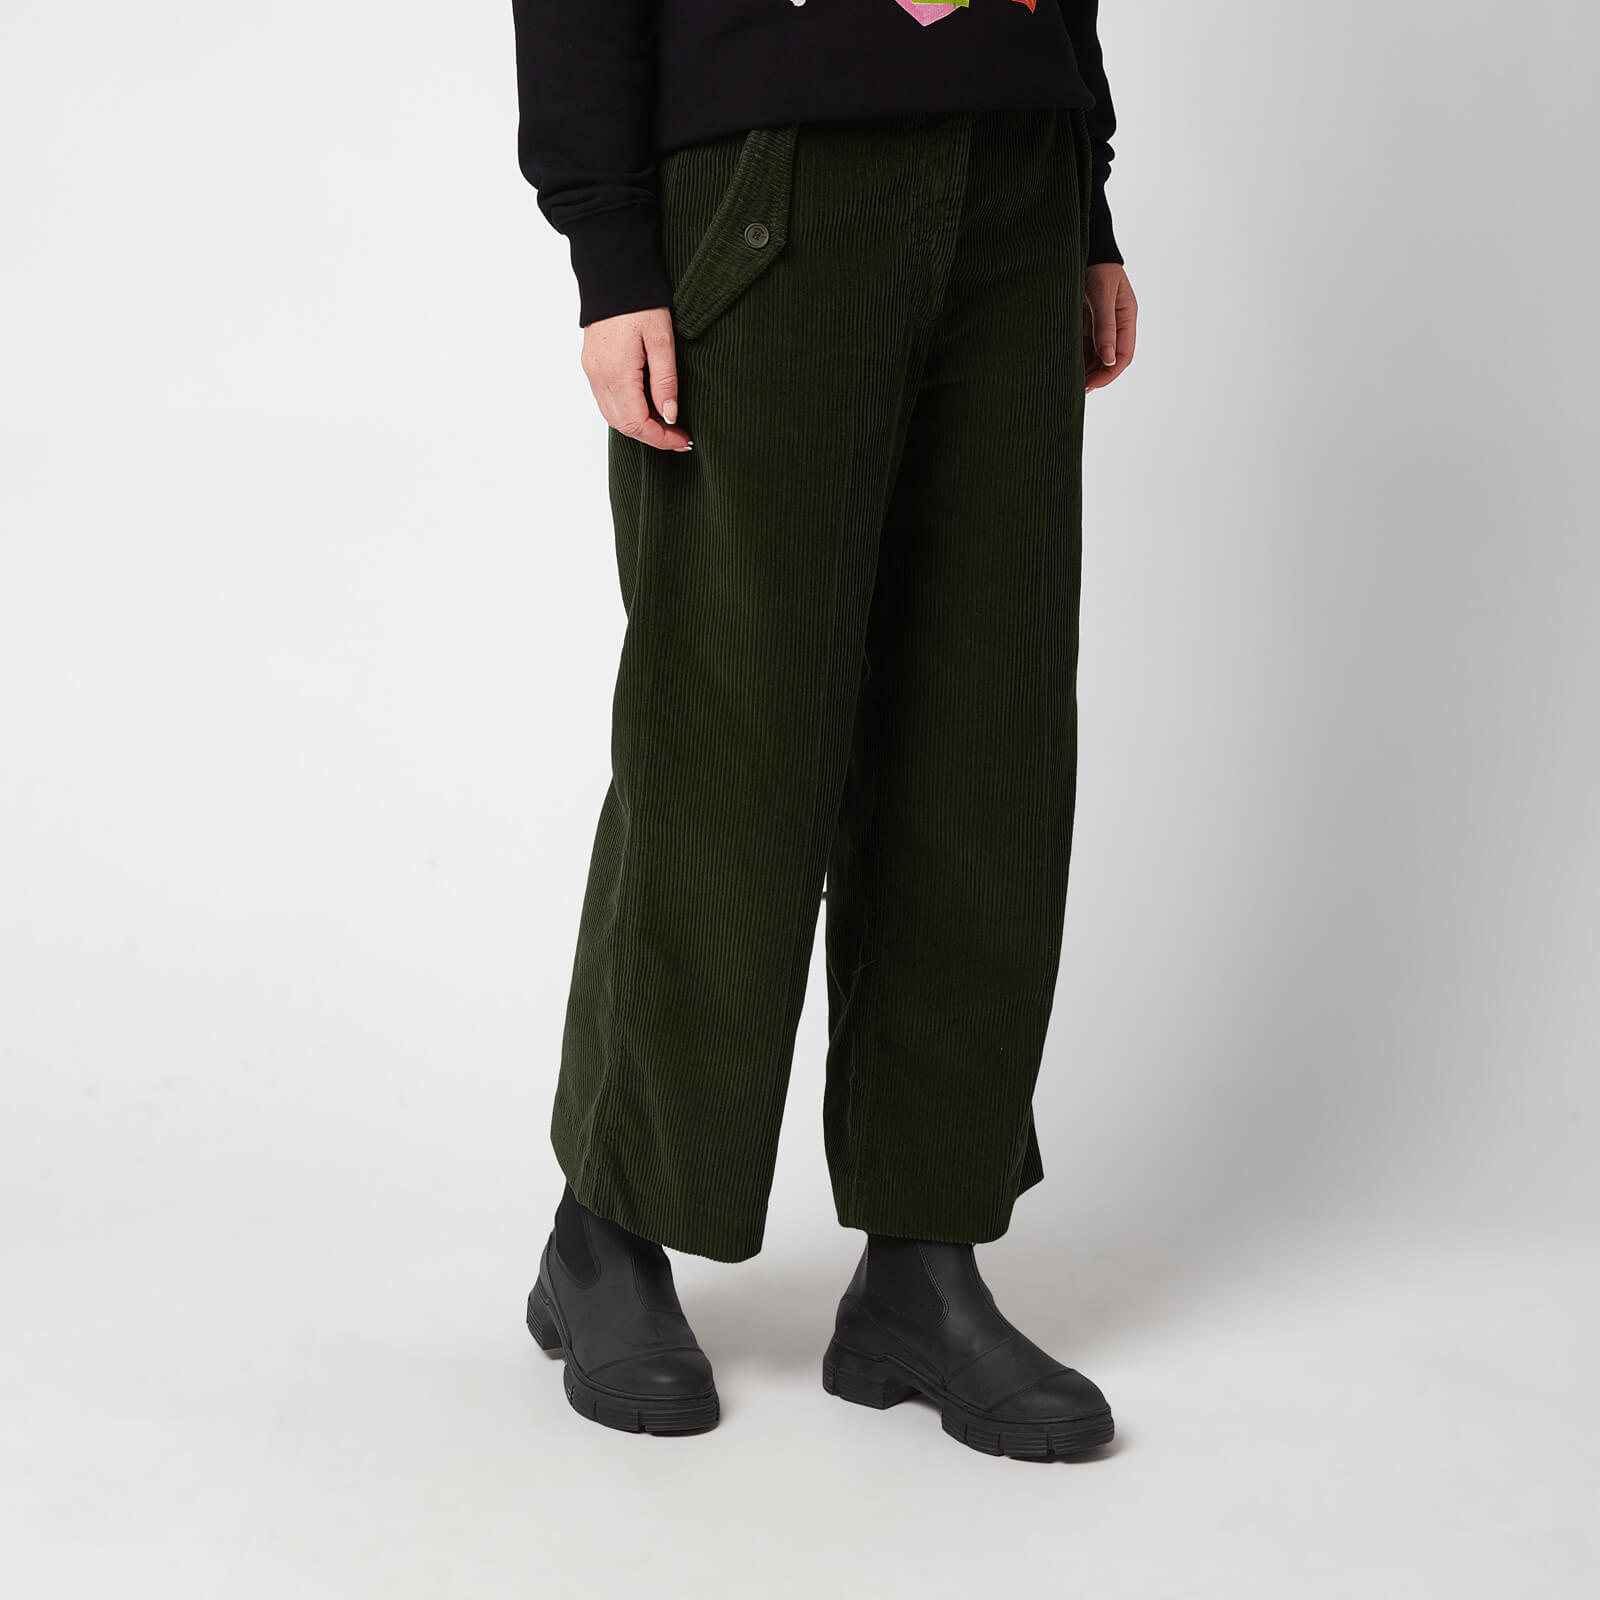 KENZO Women's Flared Corduroy Trousers - Dark Khaki - EU36/UK6